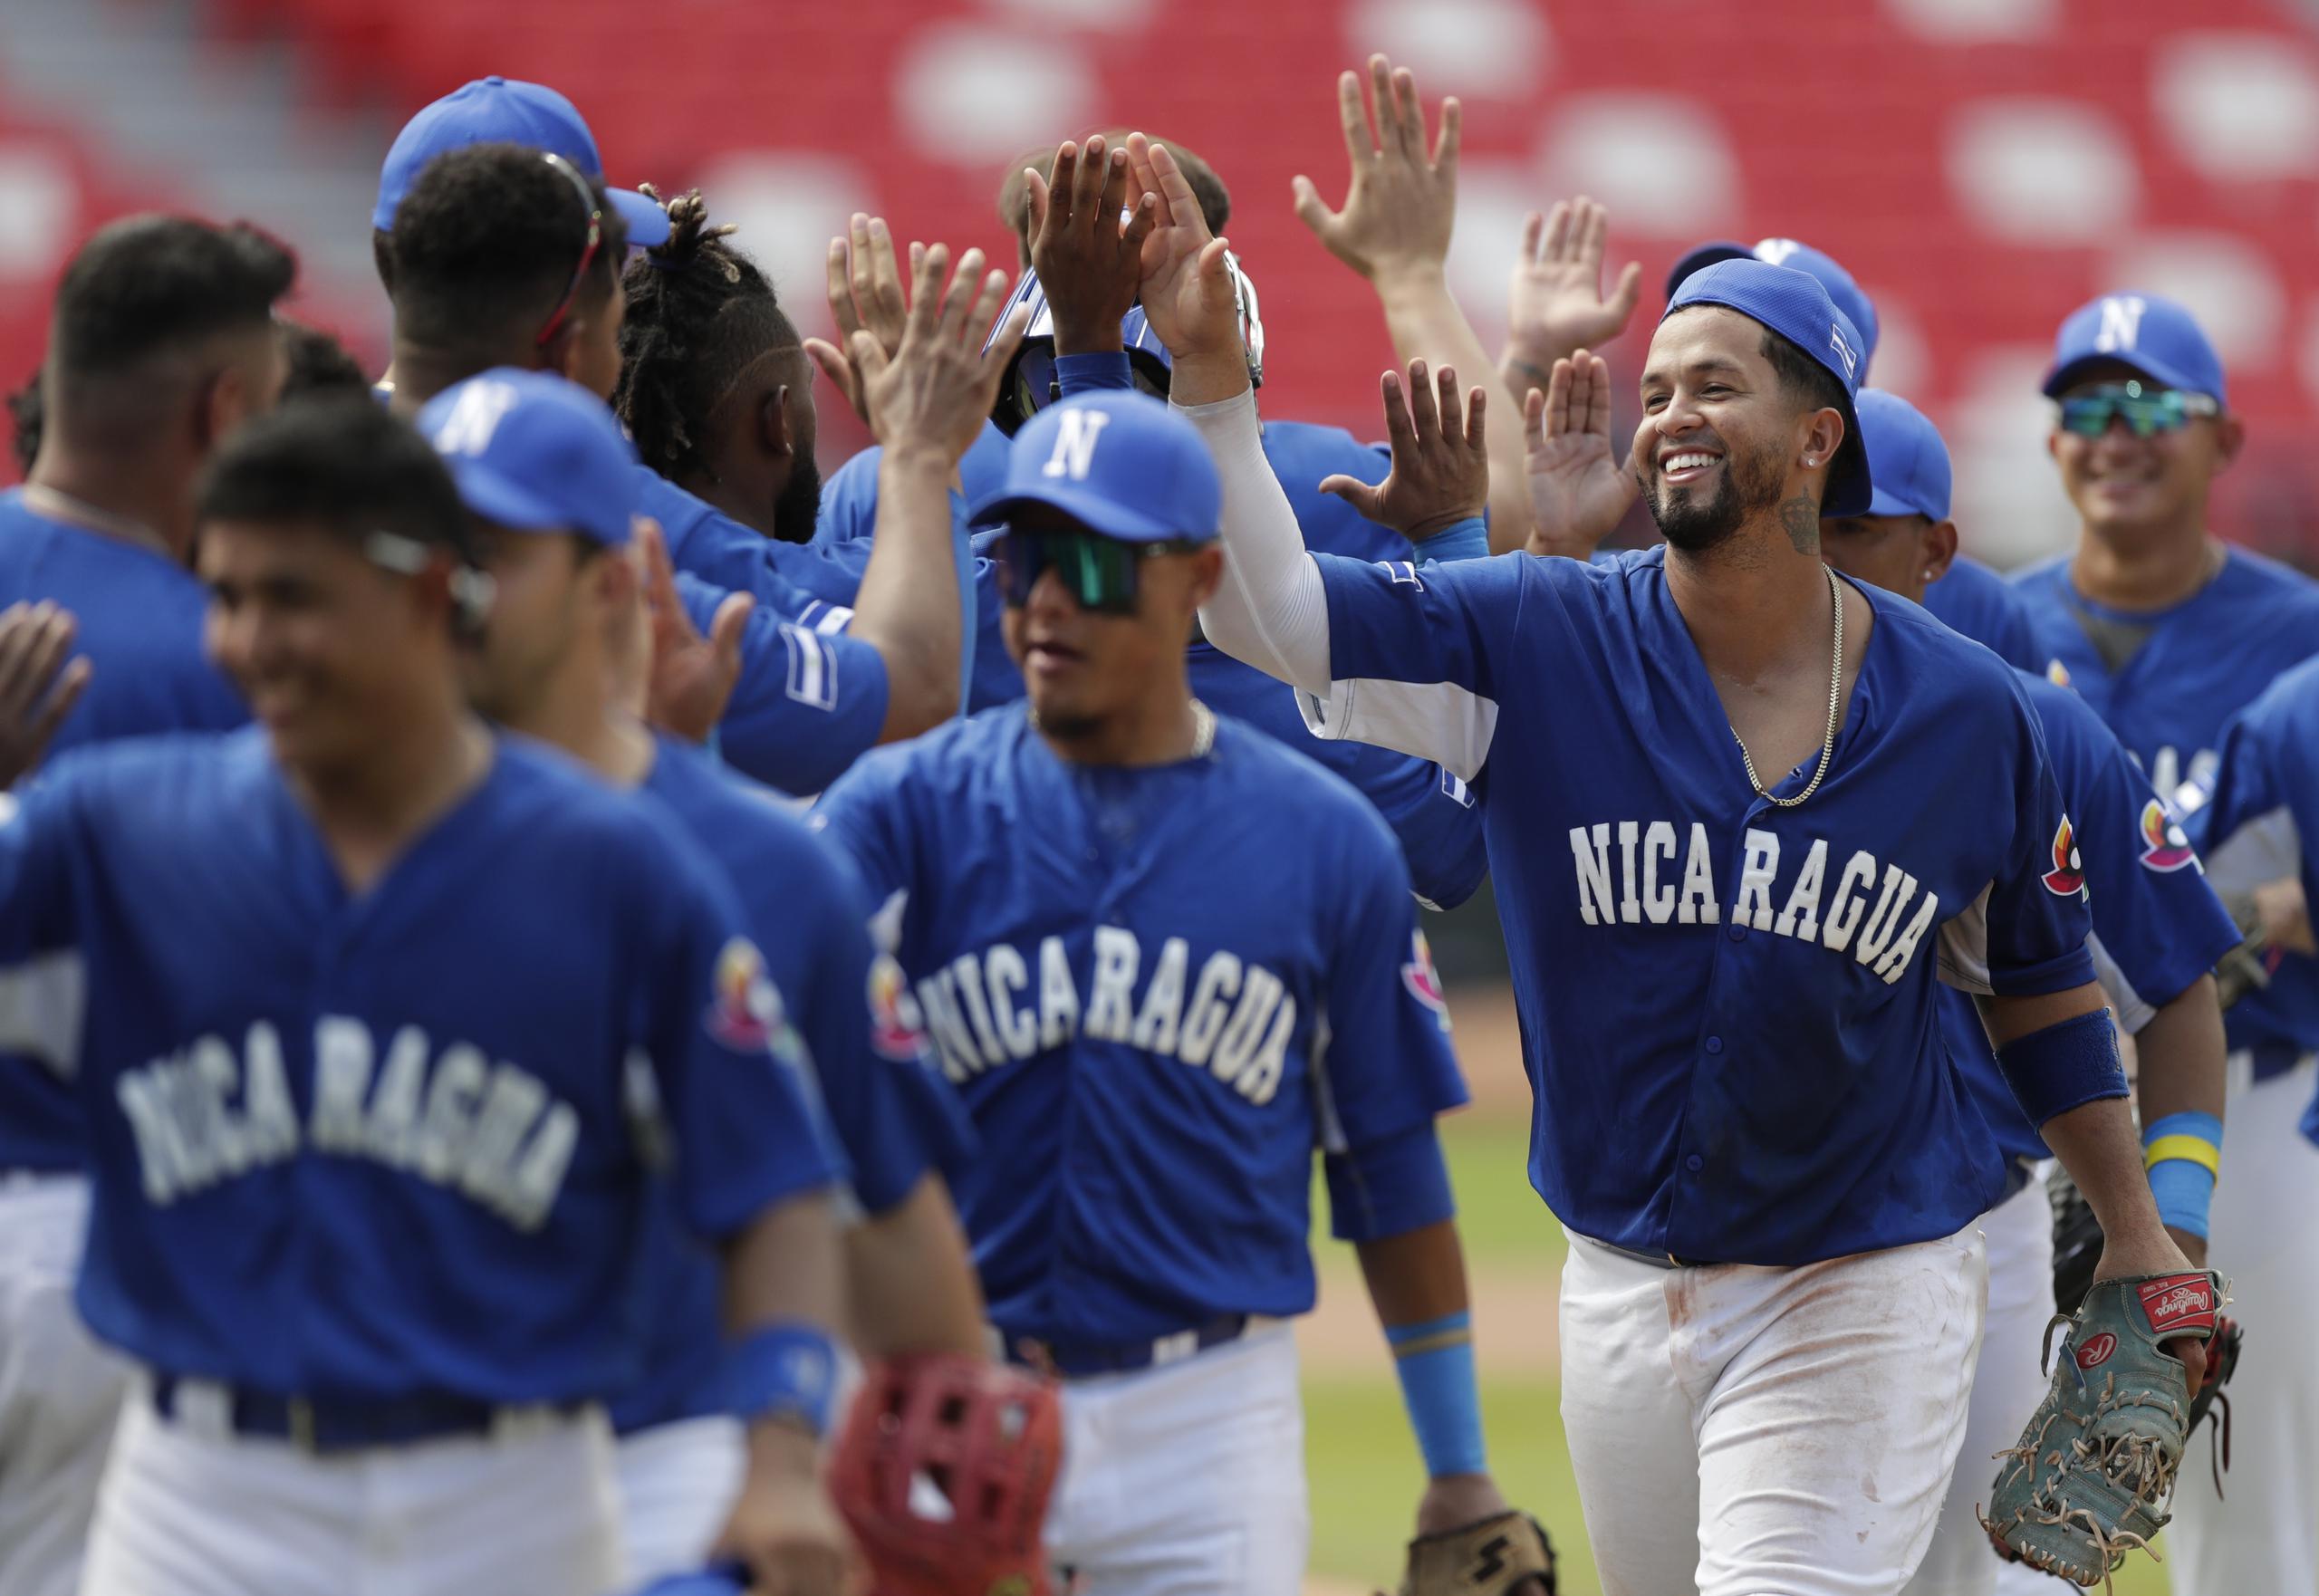 Jugadores de Nicaragua celebran hoy, al final de un juego de los Clasificatorios para el Clásico Mundial de Béisbol 2022 entre Pakistán y Nicaragua en el estadio Rod Carew en Ciudad de Panamá.